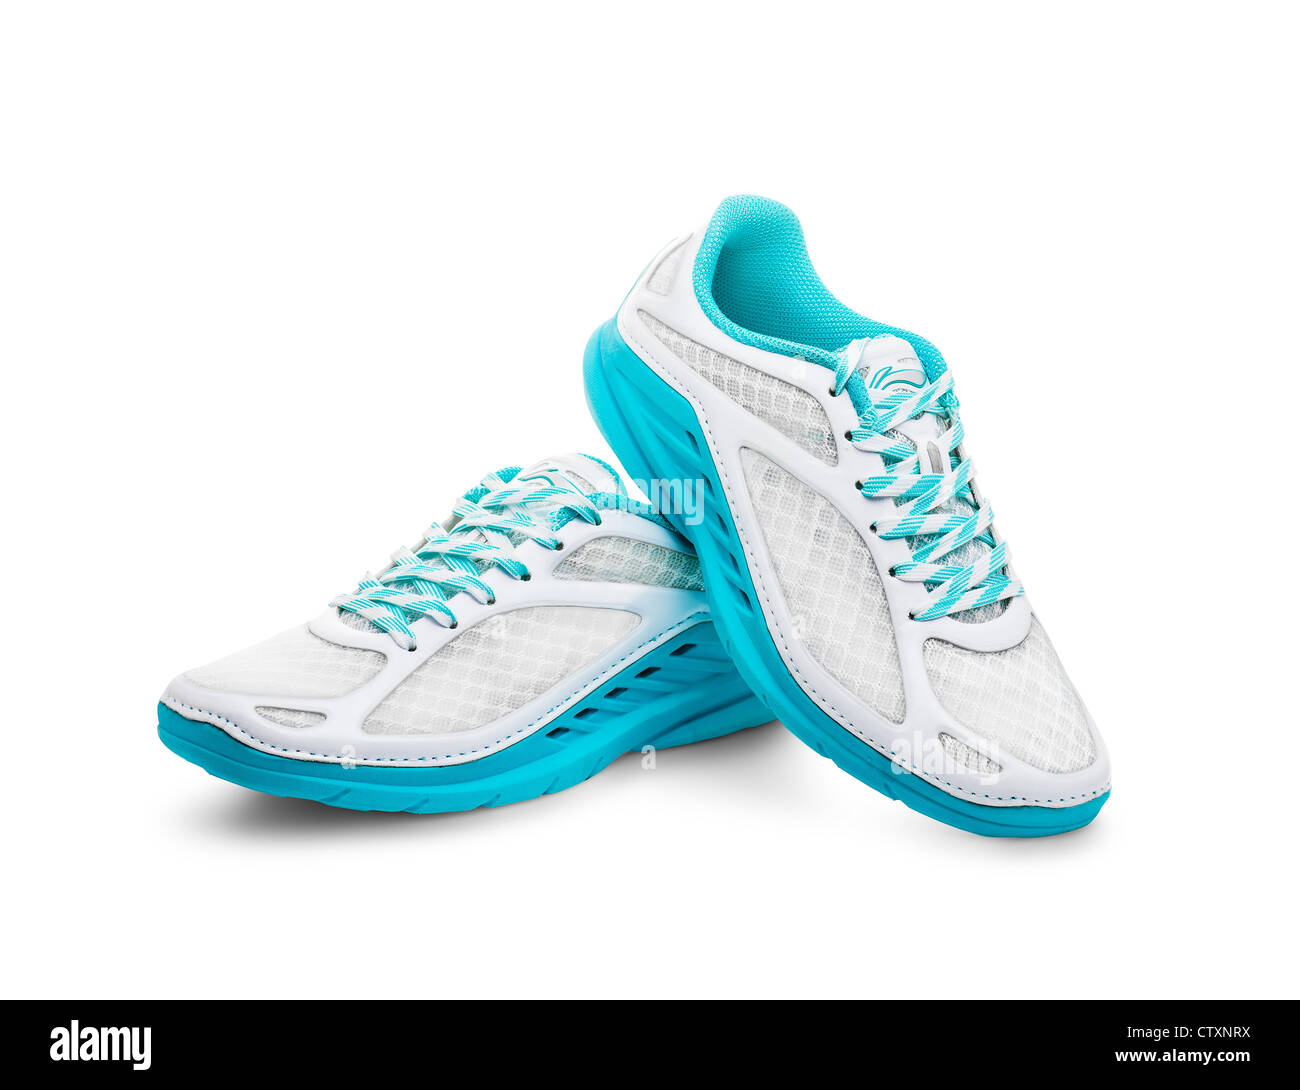 weiße Damen Laufschuhe mit blauen Sohlen Stockfotografie - Alamy